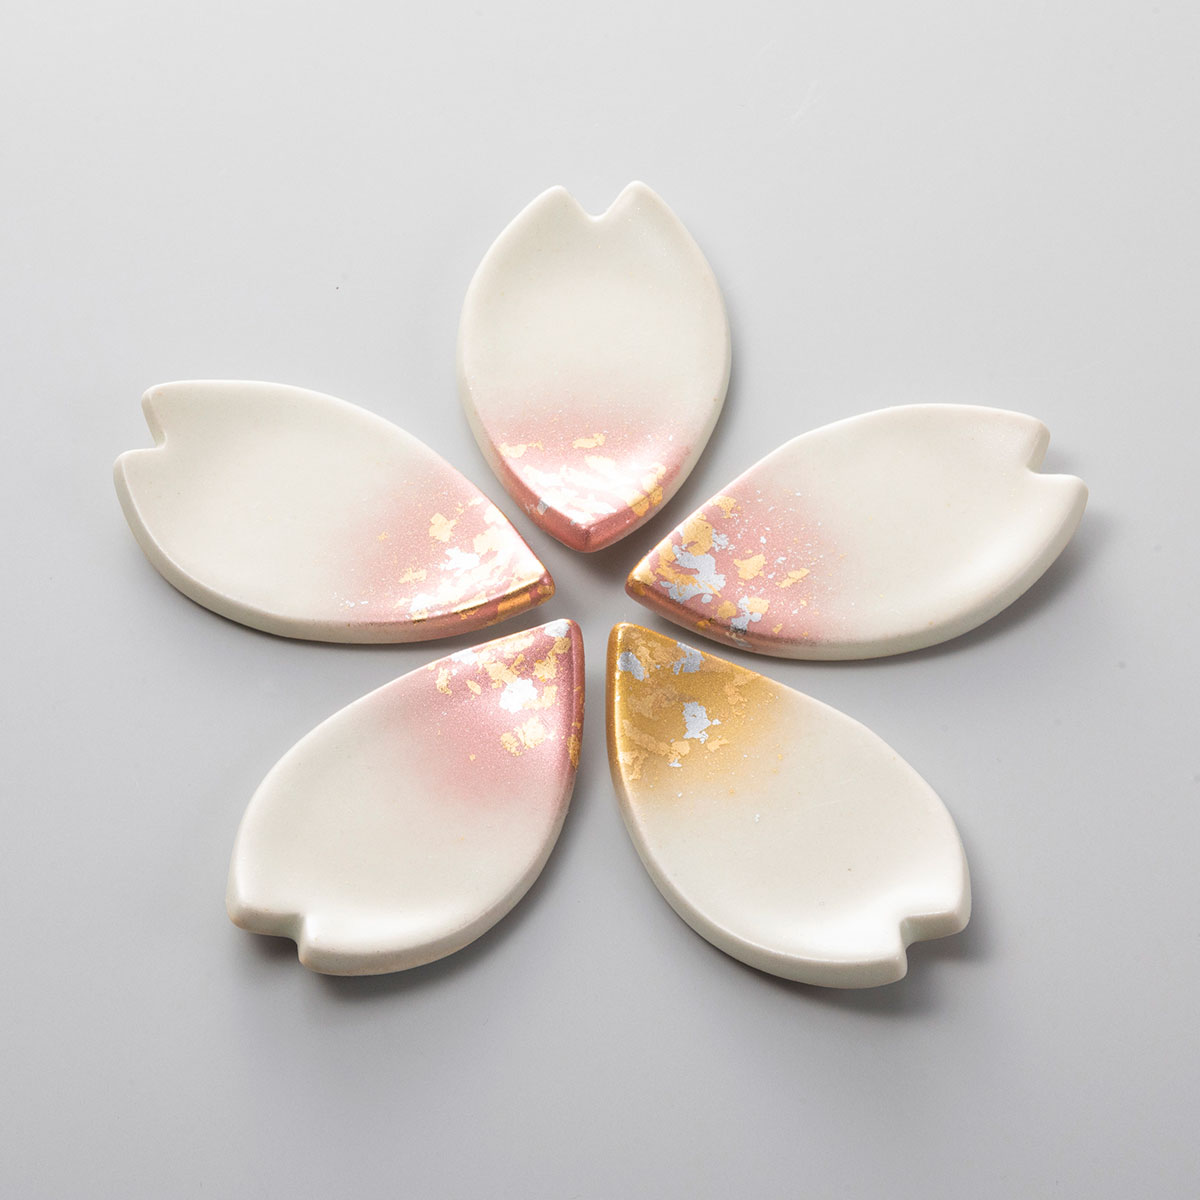 桜はなびら箸置き 金沢金箔の箔一オンラインショップ Hakuichi Style